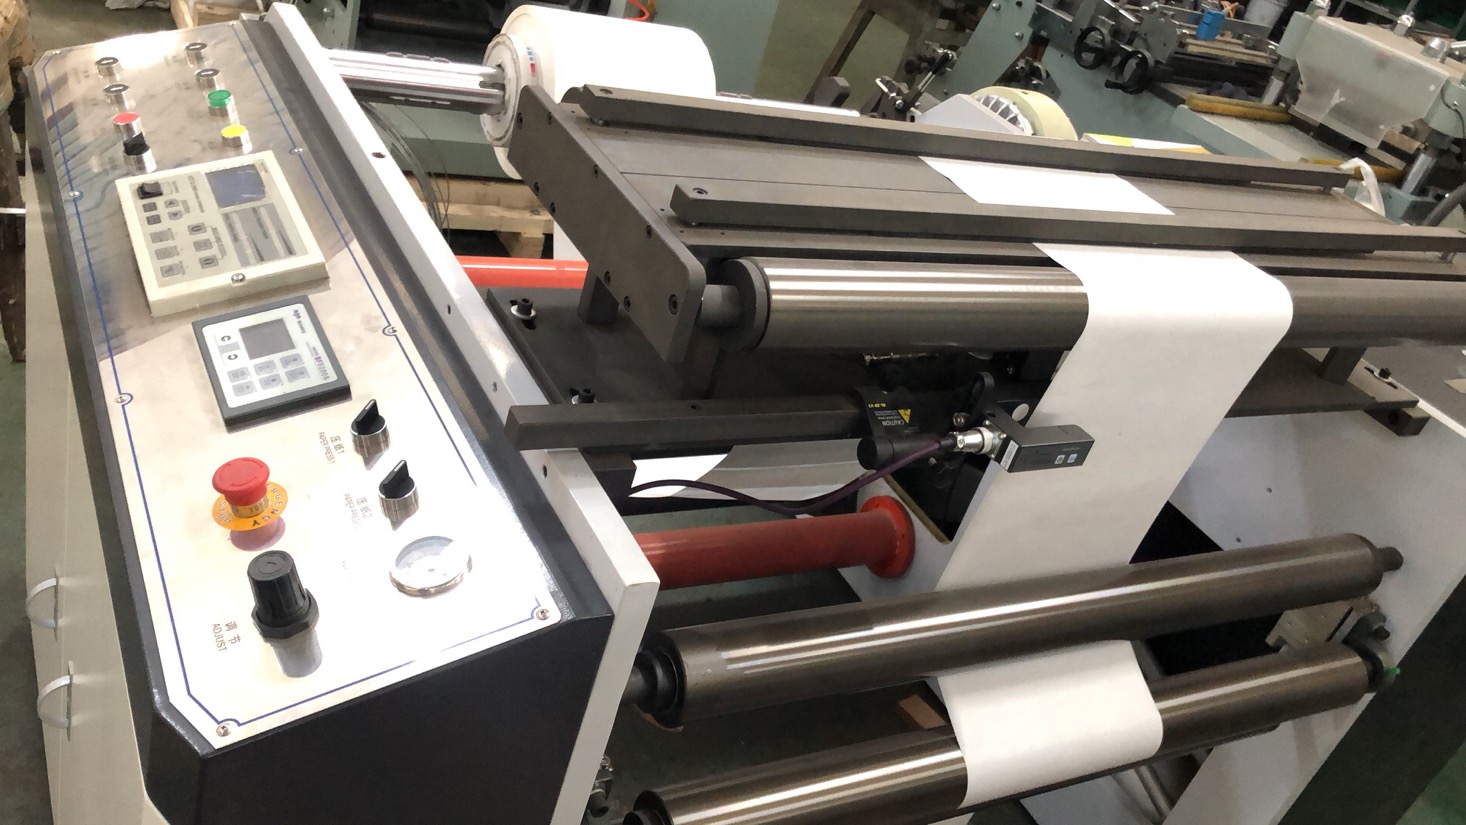 Máquina de impresión flexográfica especial con tazón de papel caliente HJ-950